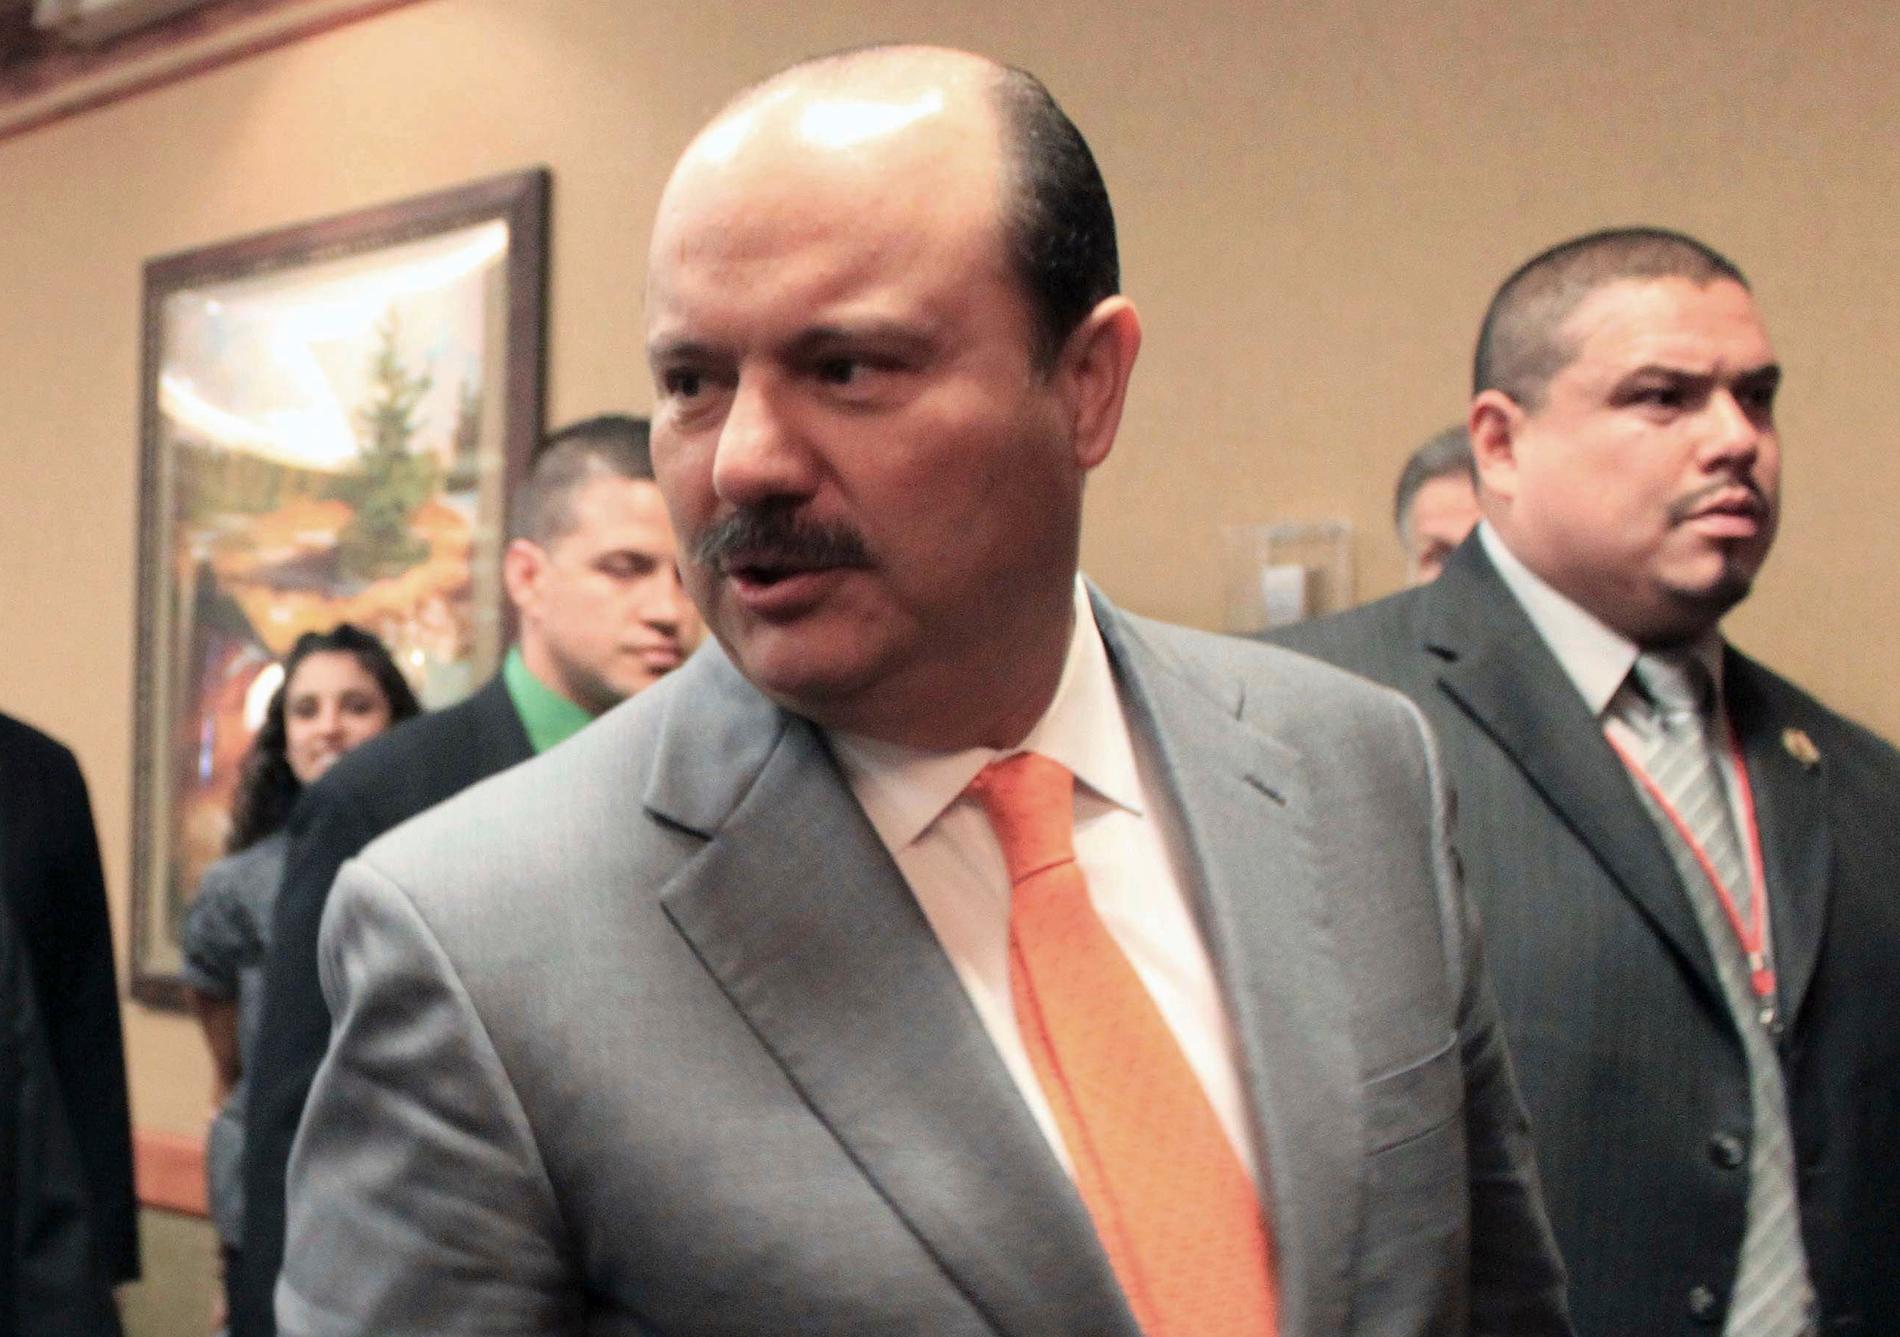 Chihuahuas förre guvernör César Duarte ska utlämnas från USA till Mexiko, anklagad för korruption. Arkivbild.